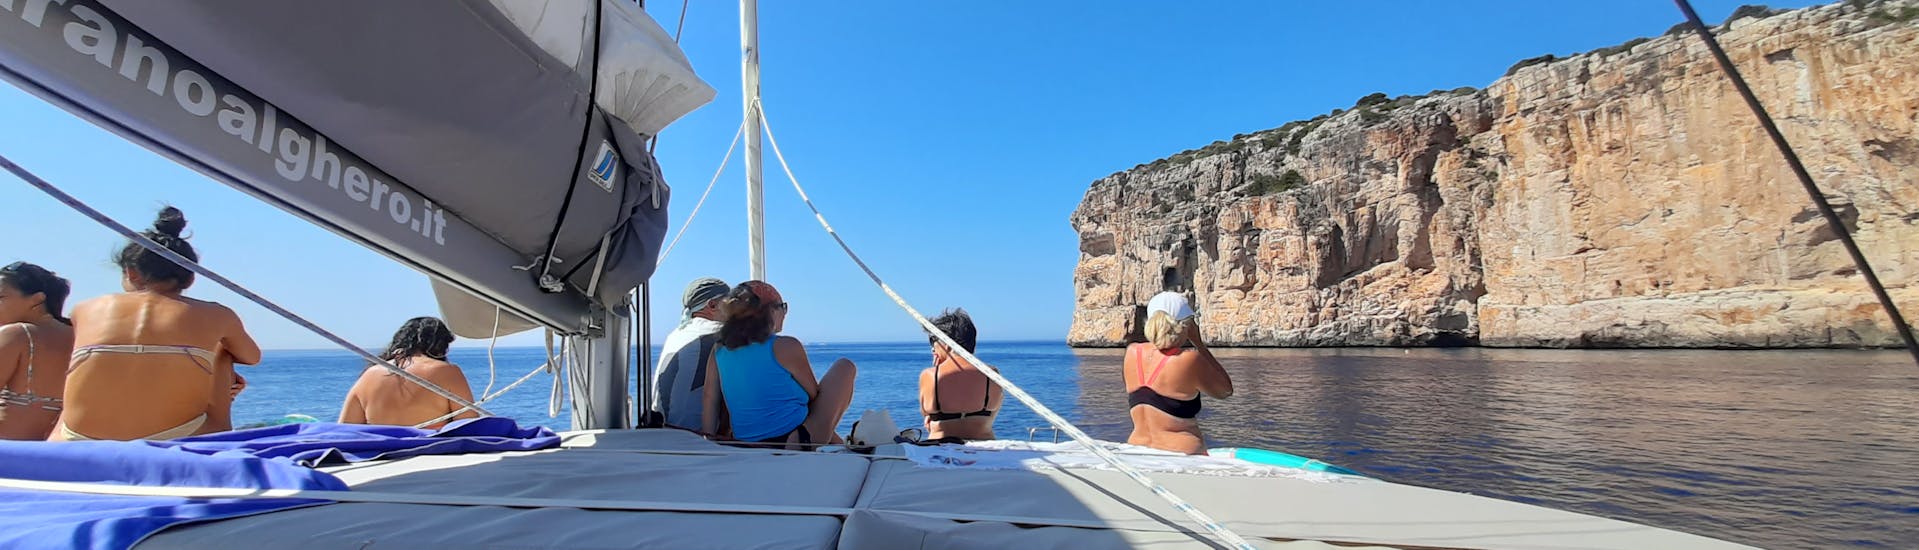 Paseo en catamarán por el Golfo de Alghero con almuerzo en Cala Dragunara y snorkel.